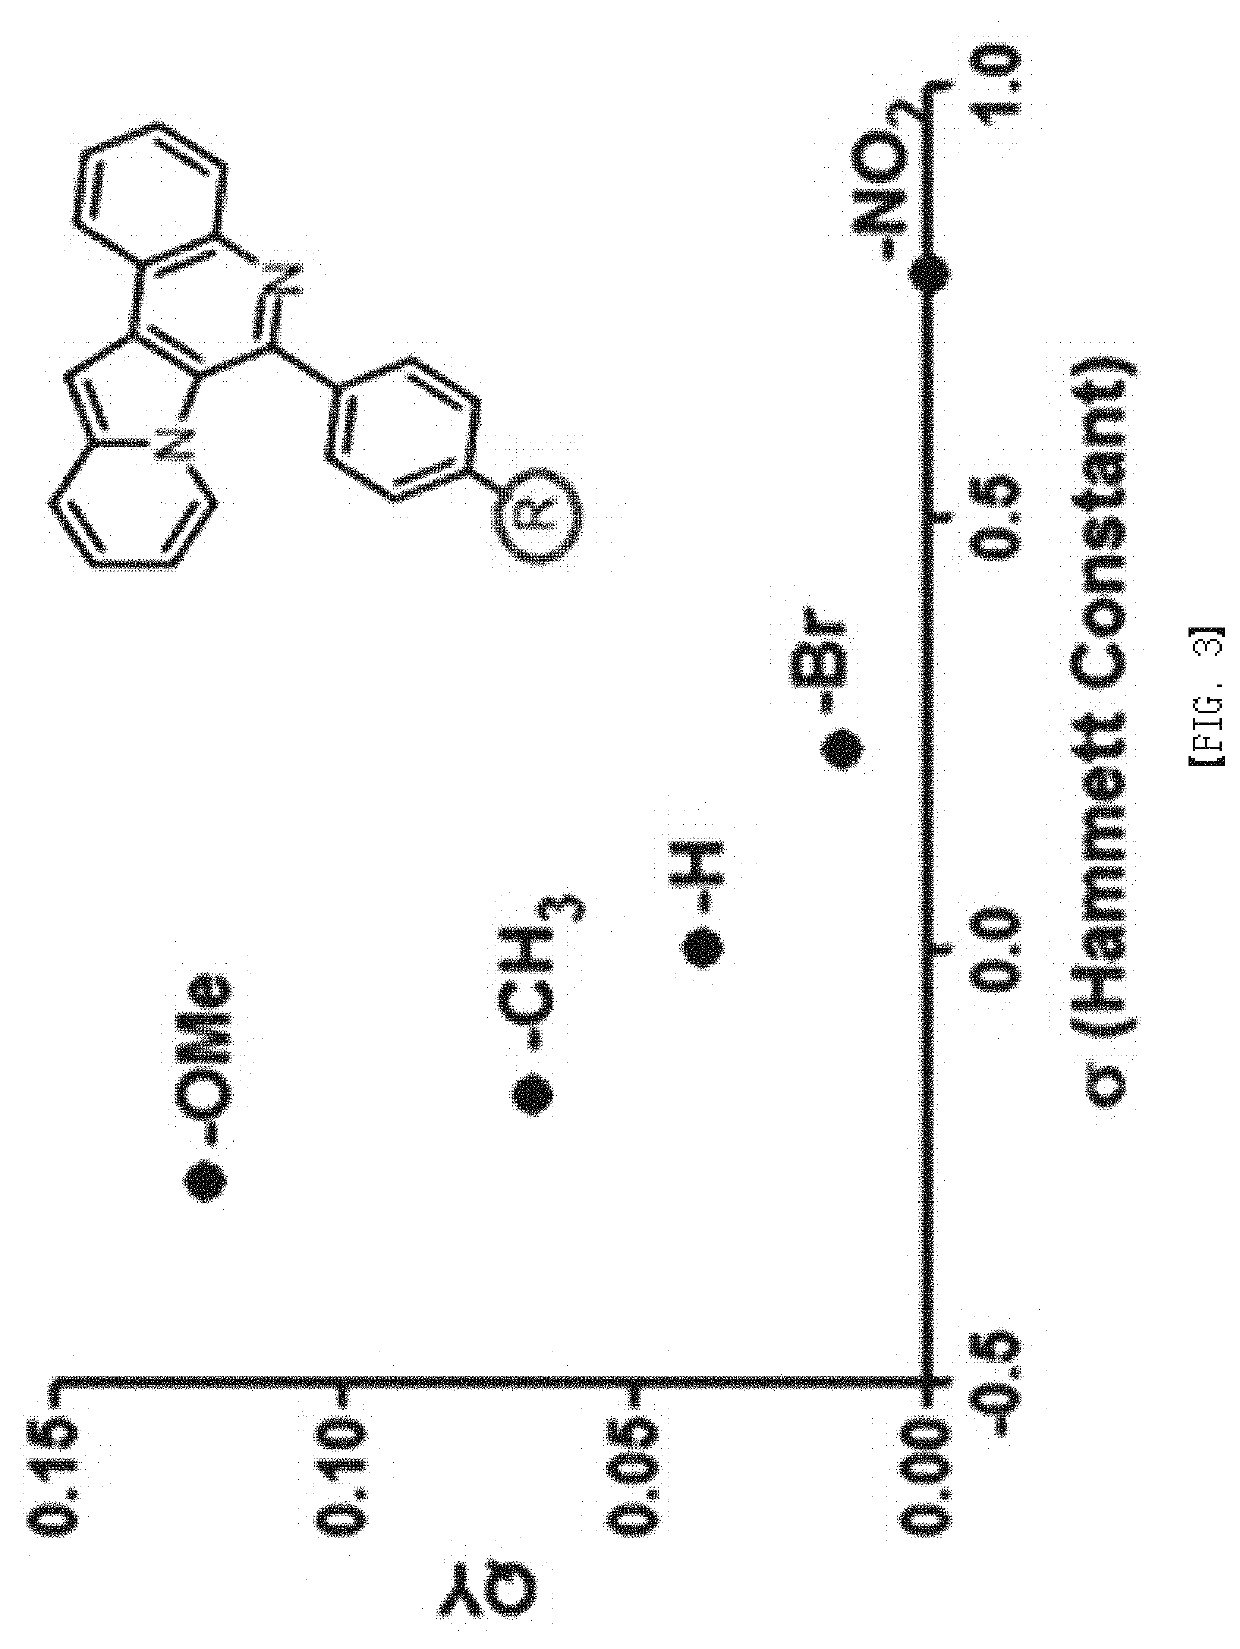 Indolizino [3,2-C] quinoline-based fluorescent probe